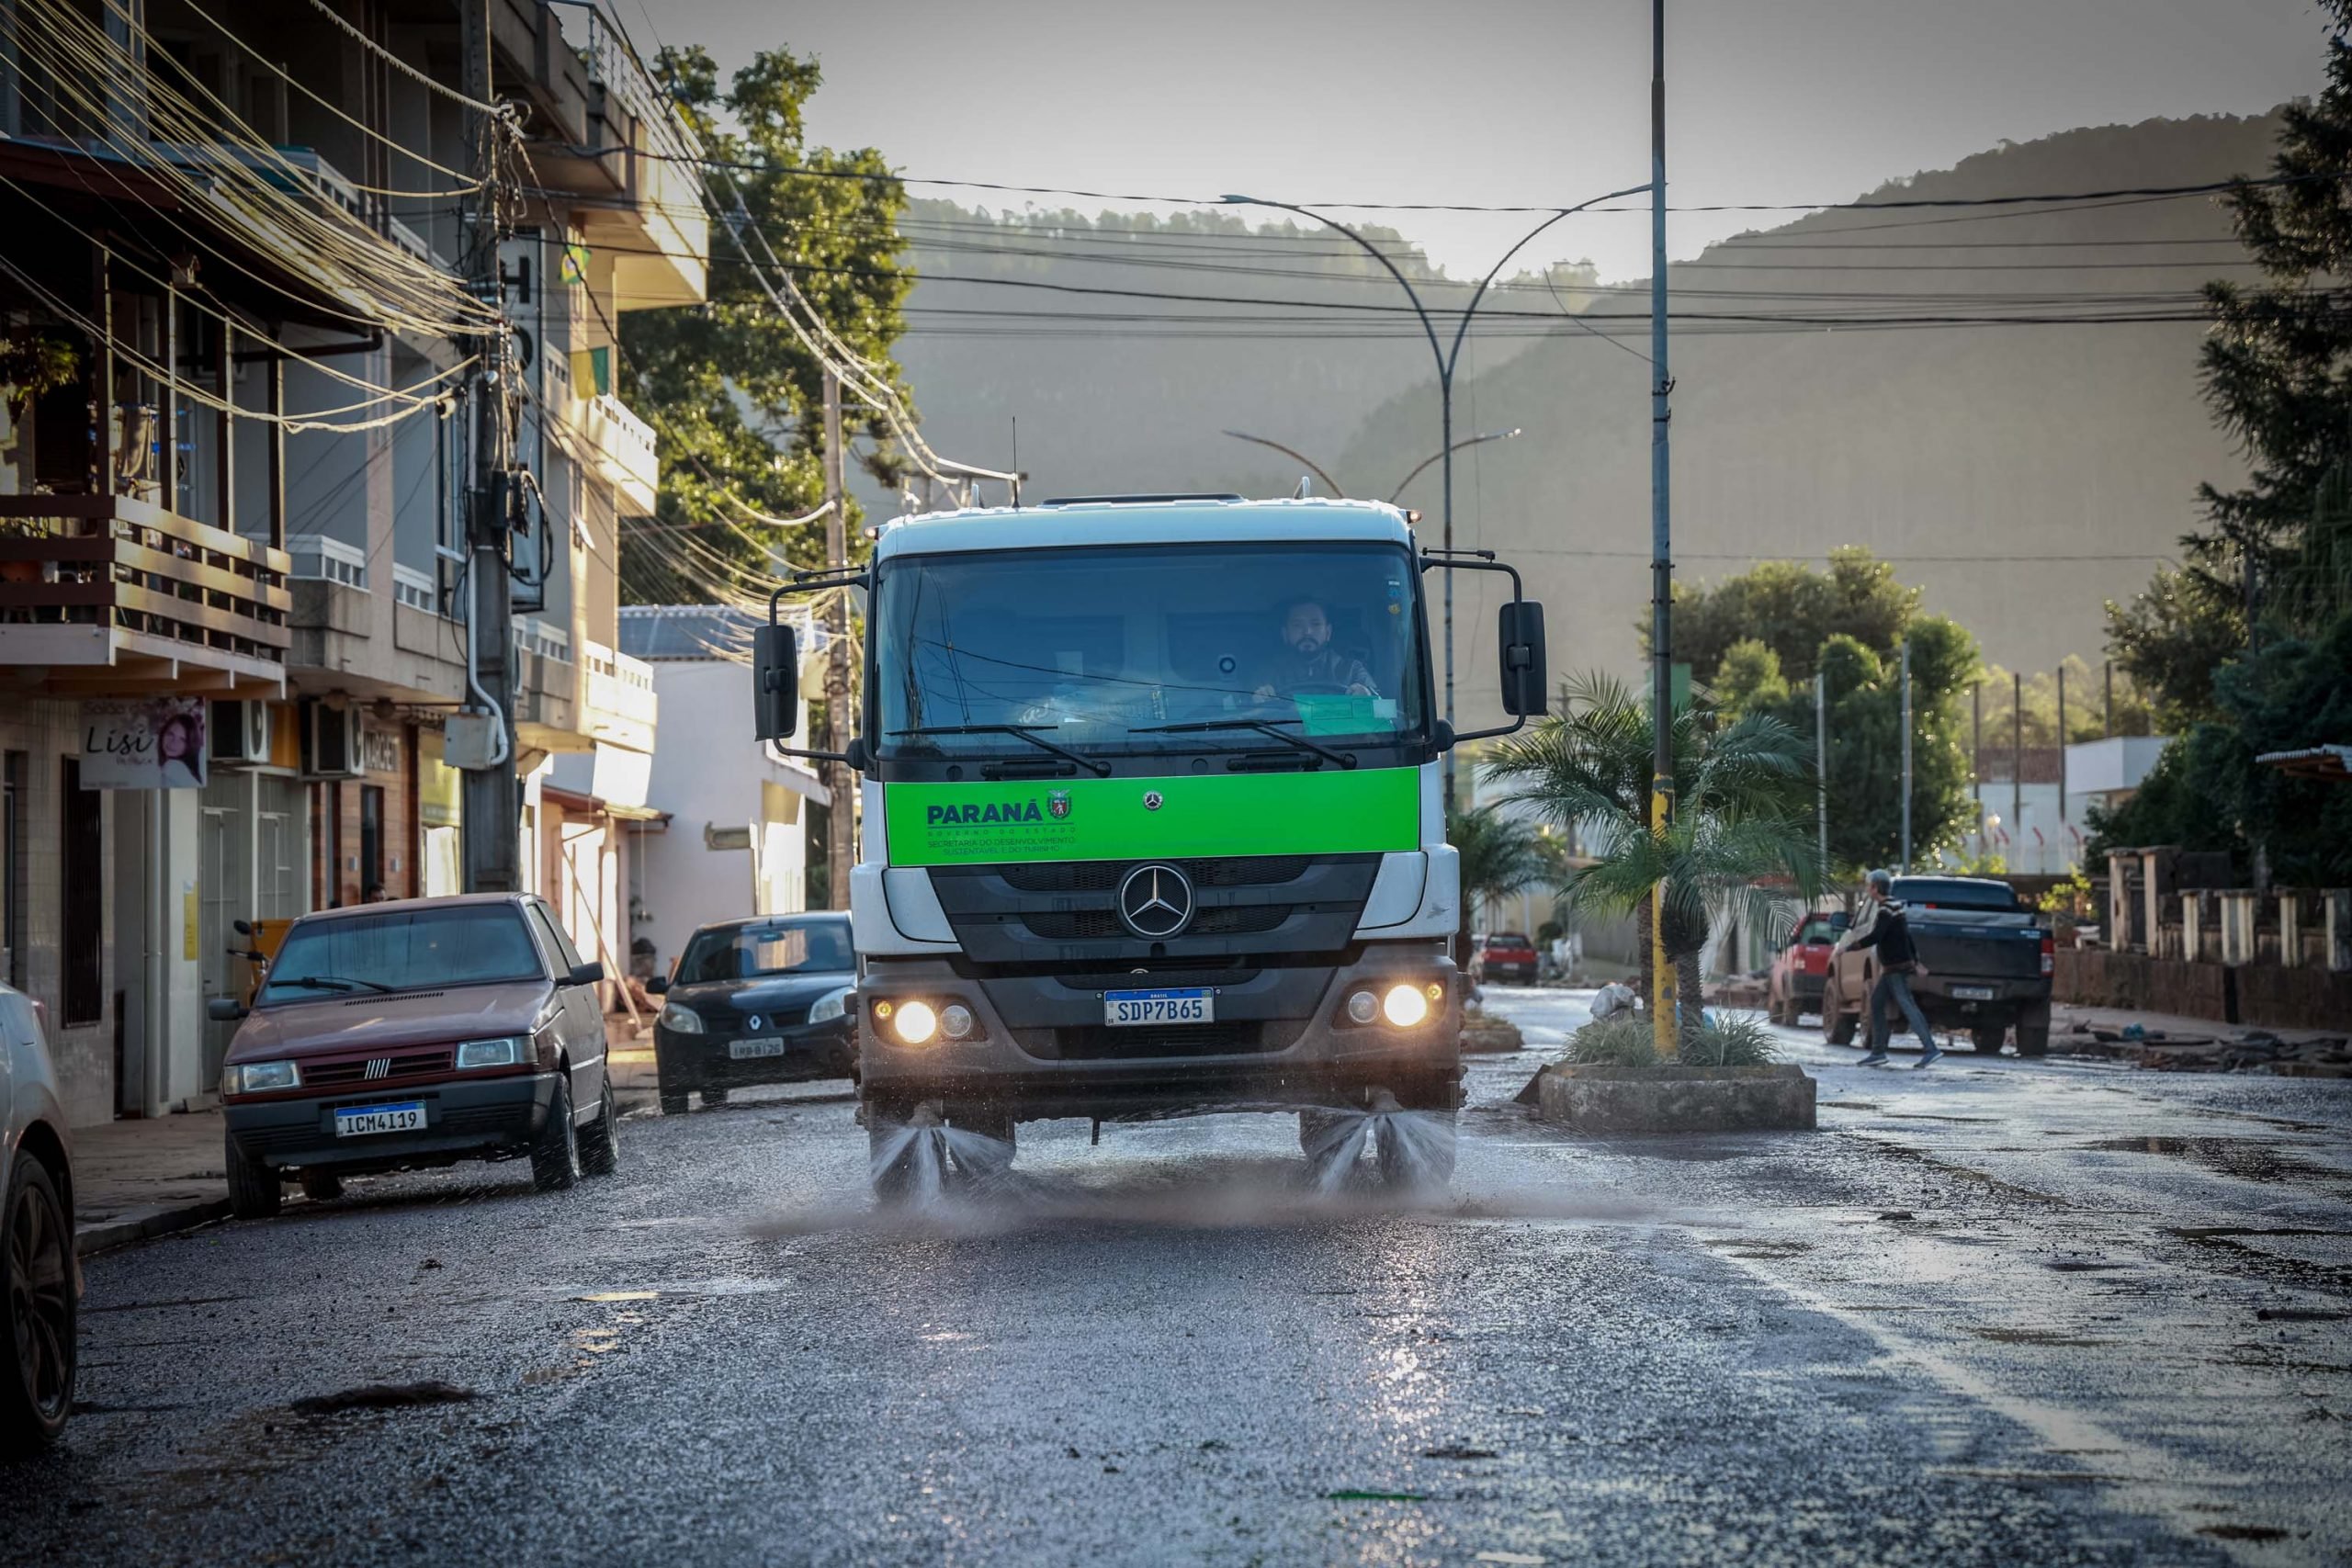 Imagem mostra um caminhão de limpeza do IAT, limpando uma rua no Rio Grande do Sul